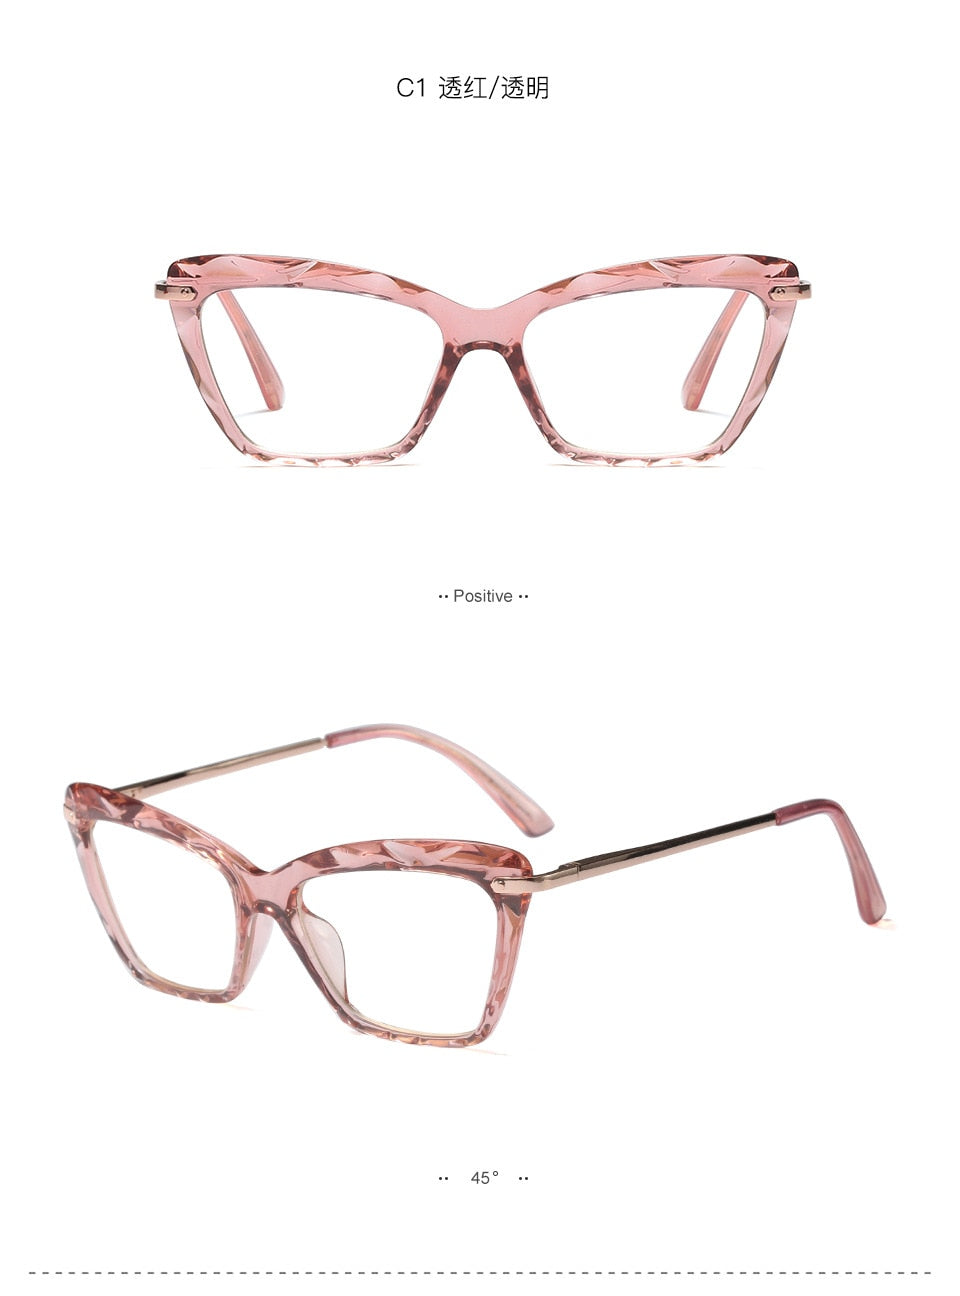 Women's Full Rim Cat Eye Acetate Frame Eyeglasses 97533 Full Rim Bclear   